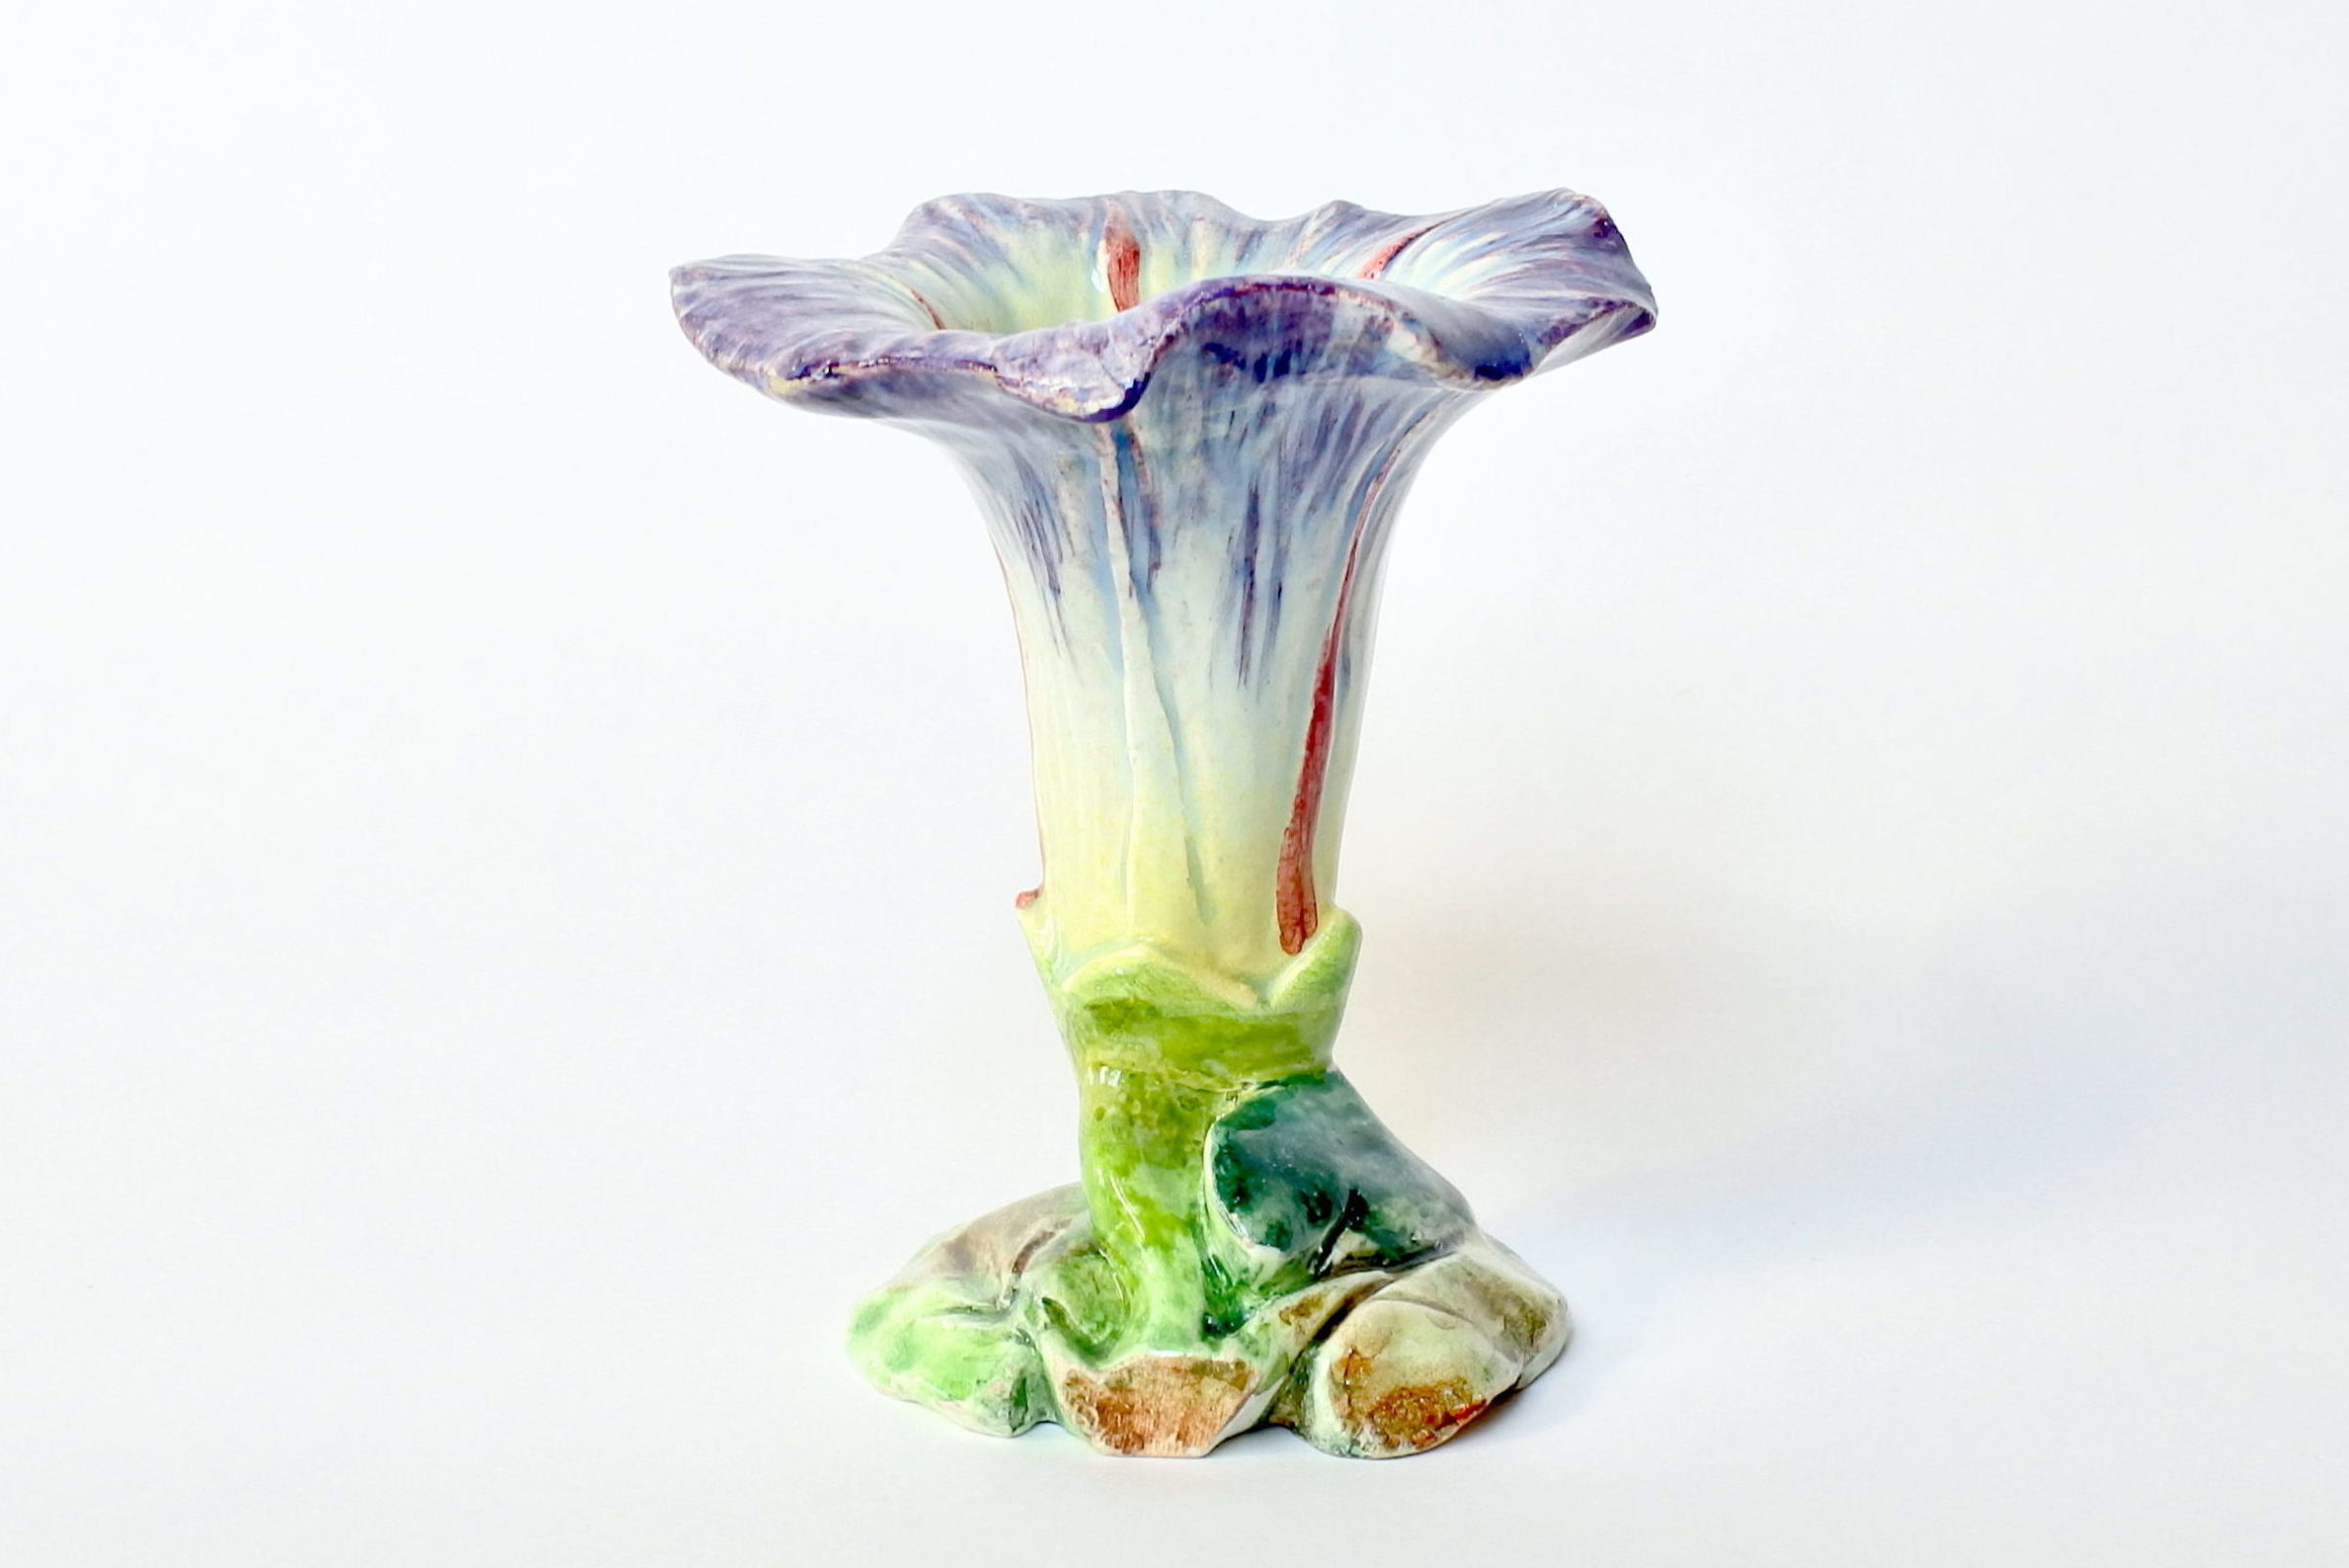 Vaso in ceramica barbotine a forma di convolvolo - Delphin Massier - 2